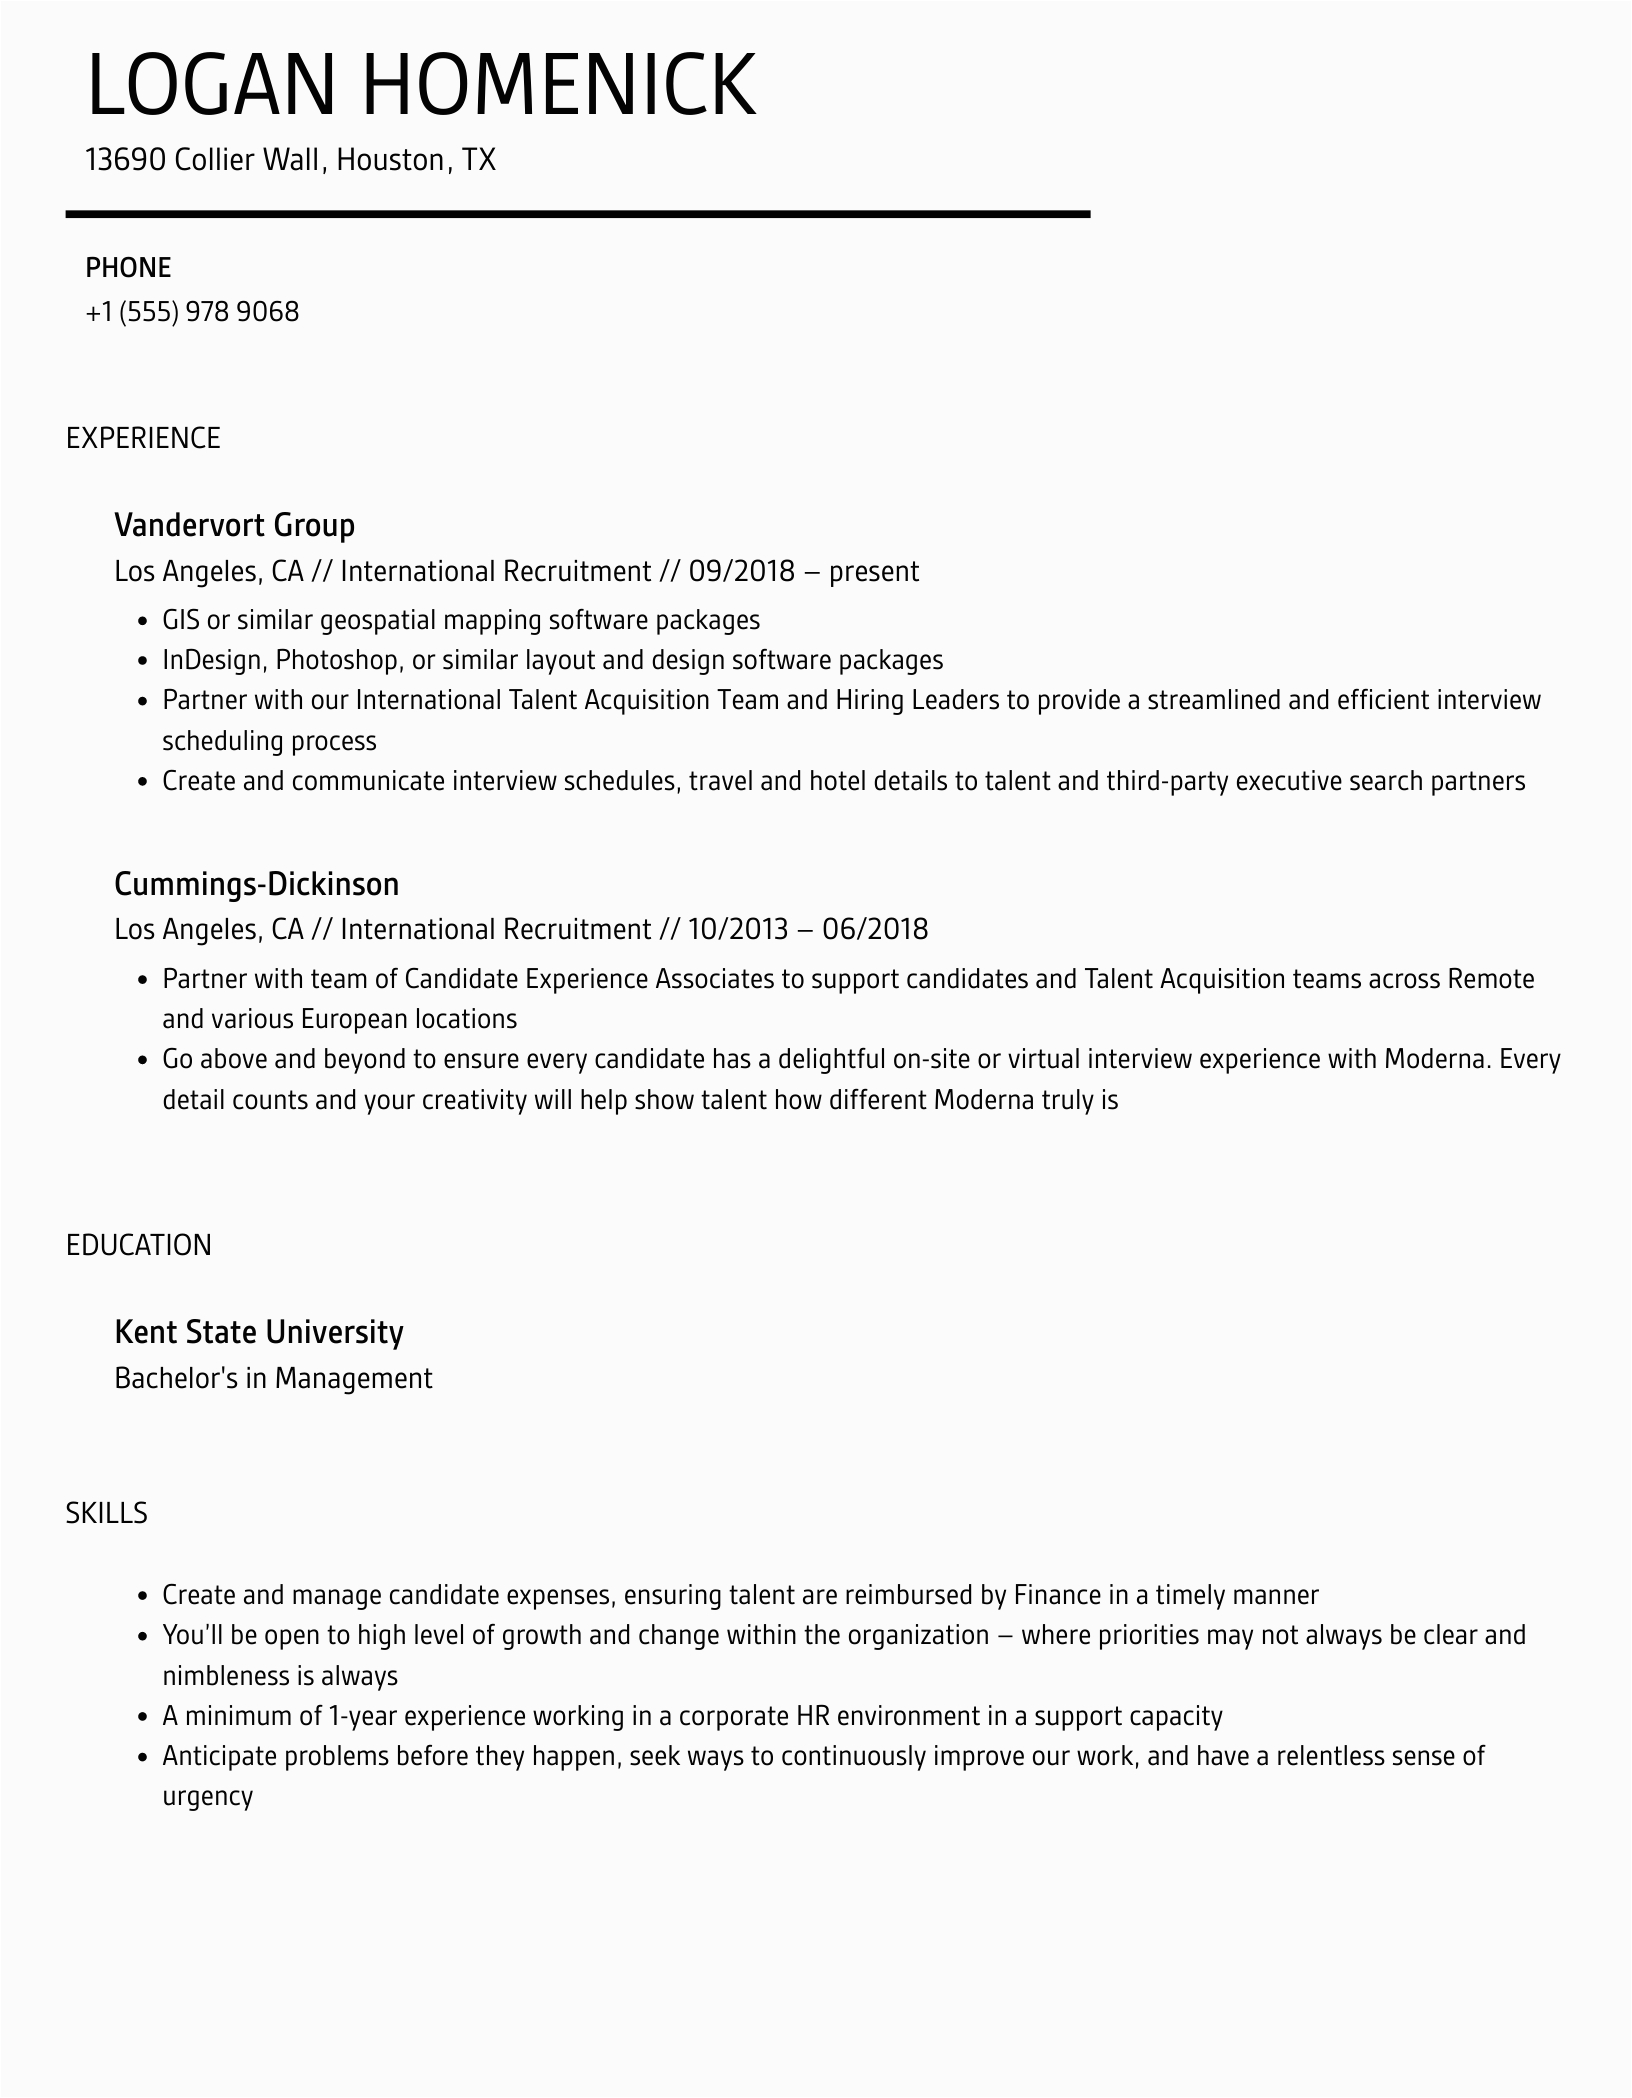 Sample Resume for International Recruiter Position International Recruitment Resume Samples